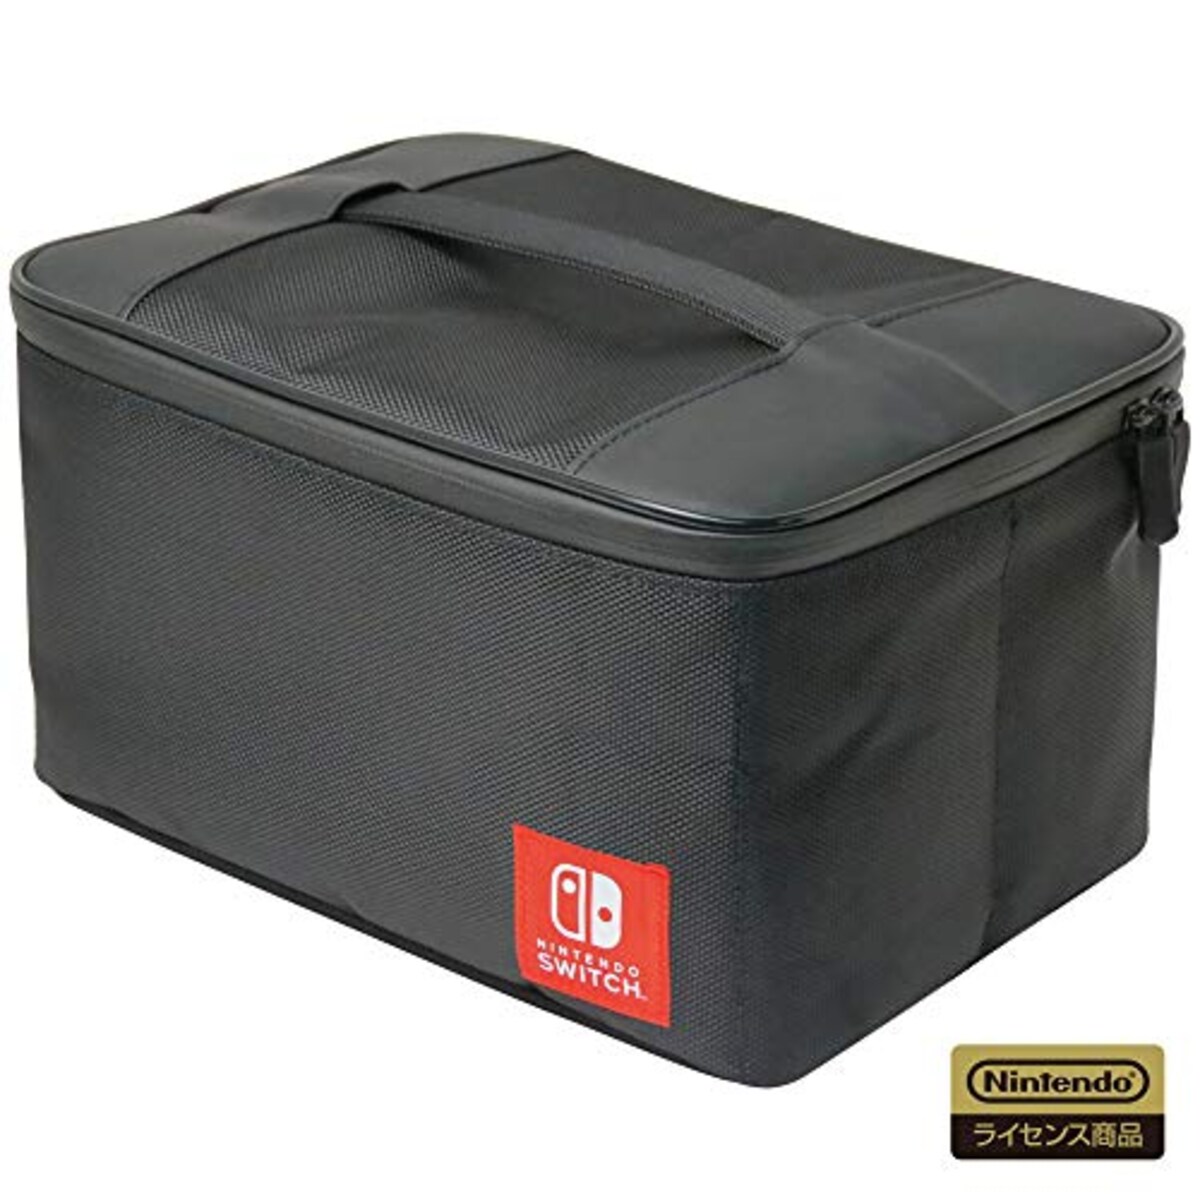 まるごと収納バッグ for Nintendo Switch